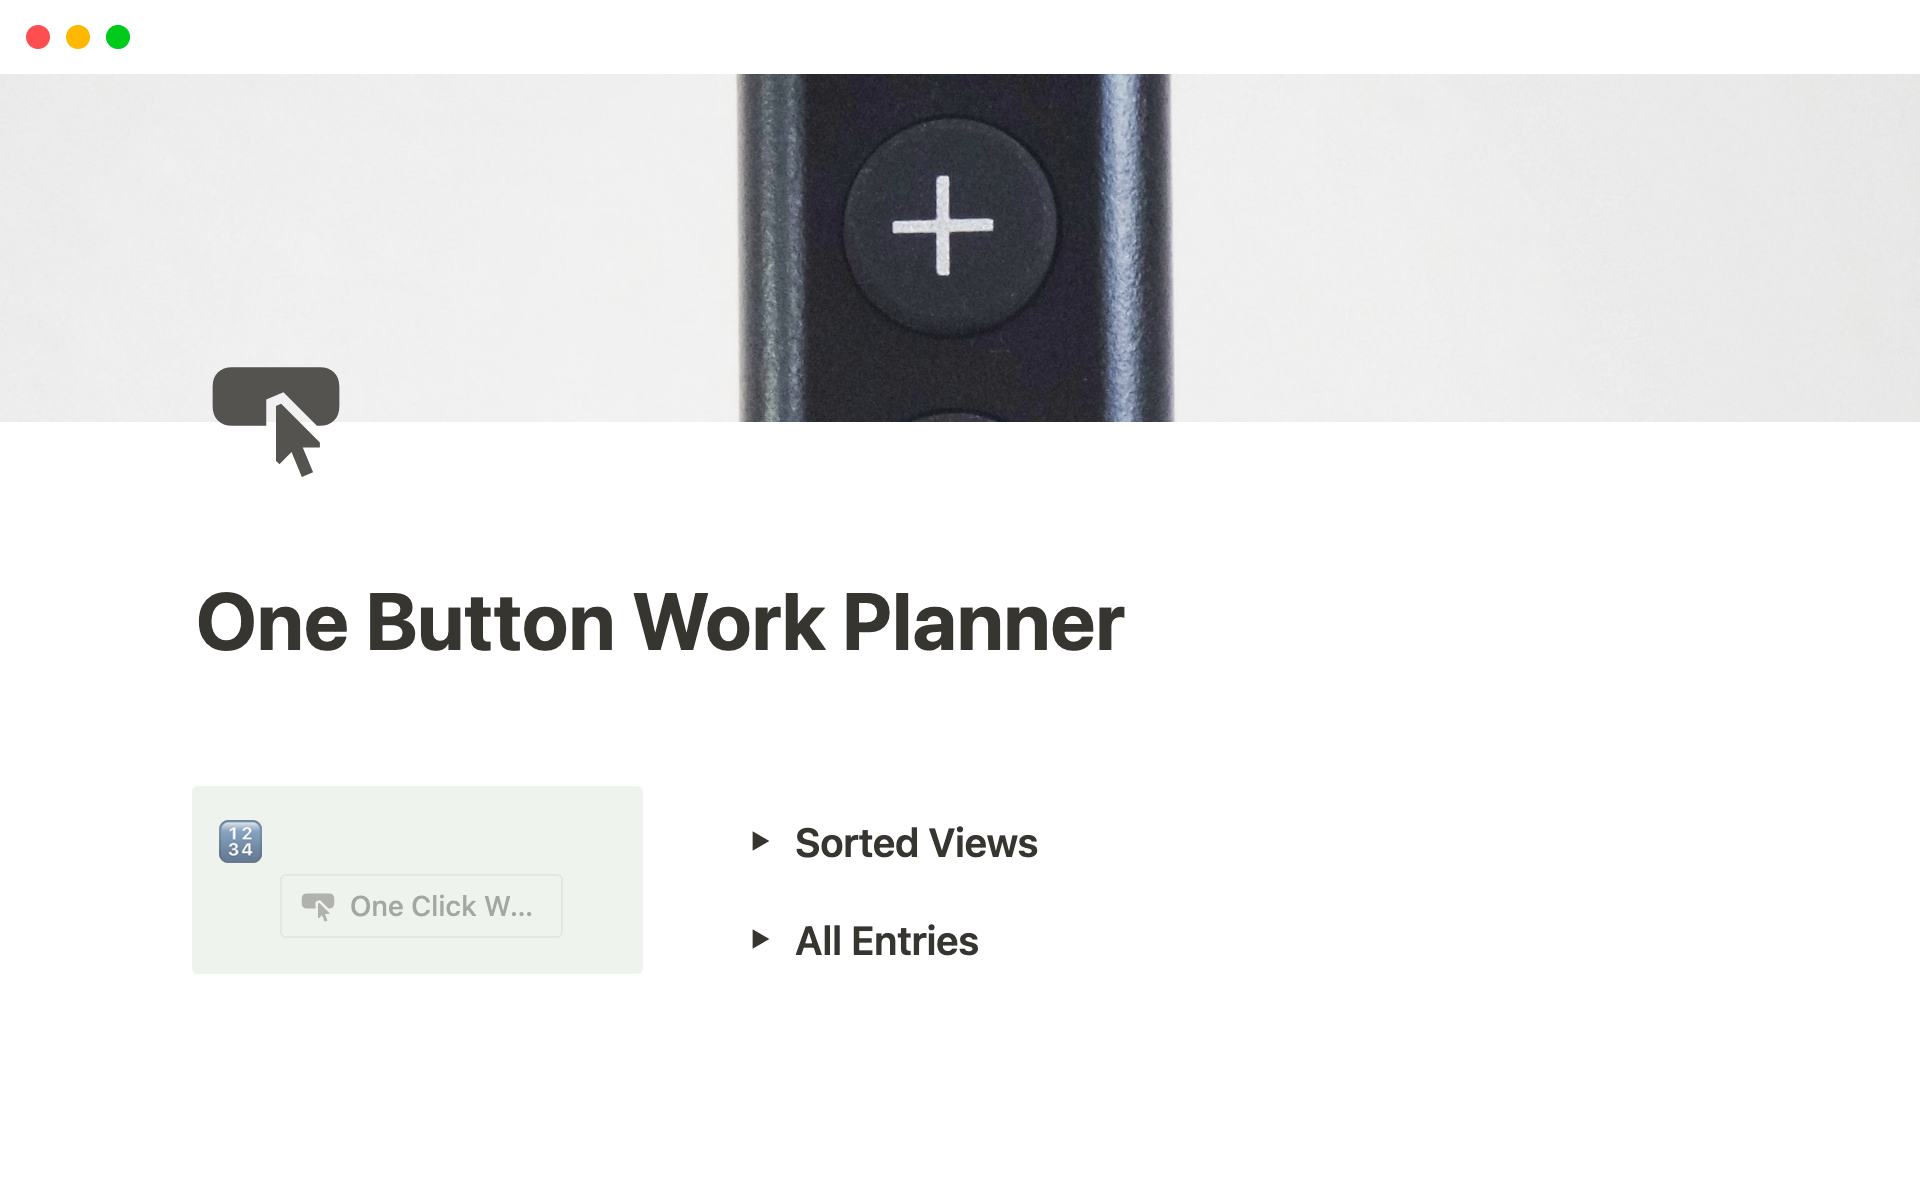 This one button work planner is built around 1 Notion button element.